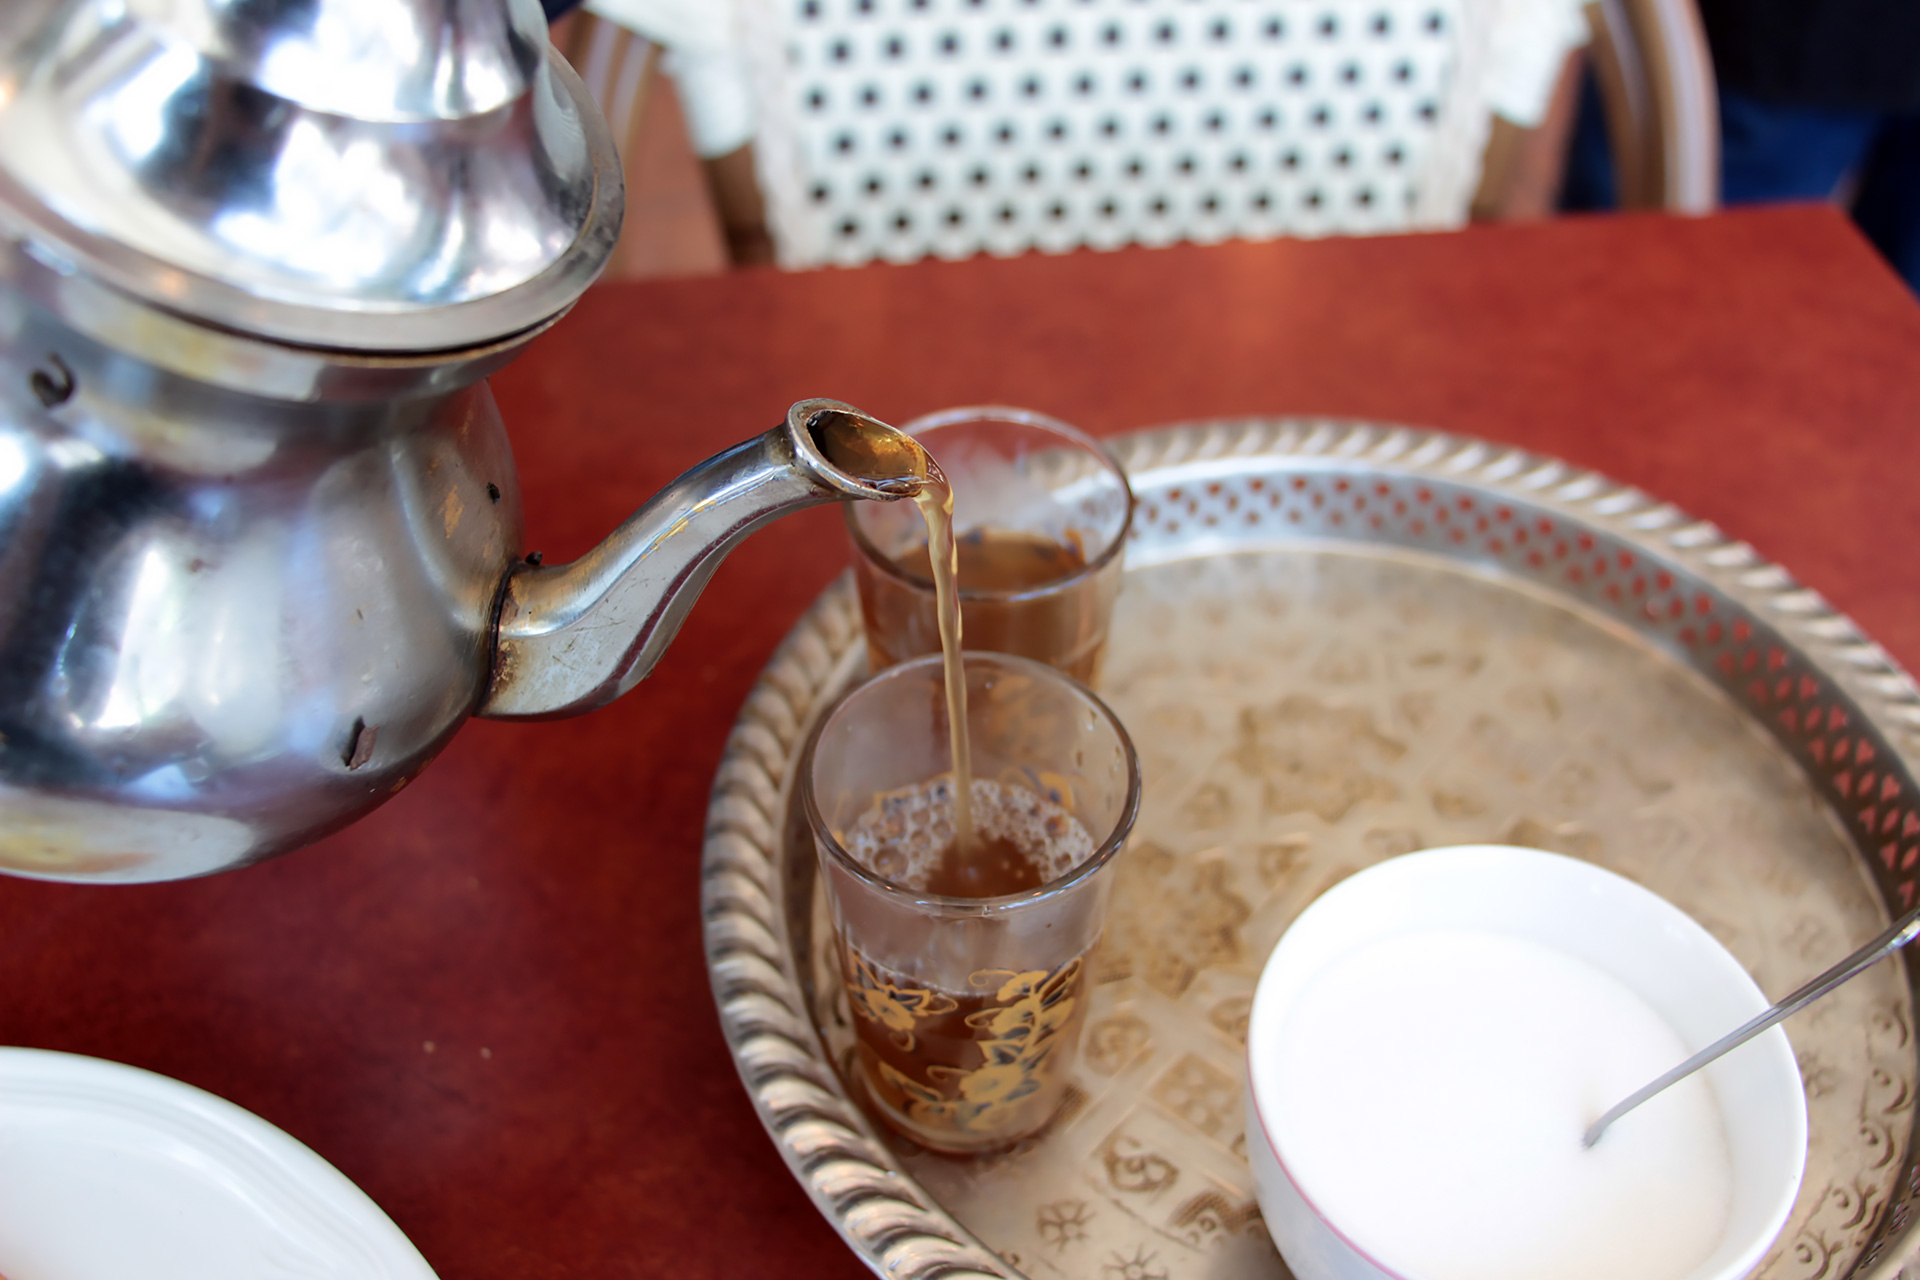 Moroccan mint tea at Cafe Zitouna.